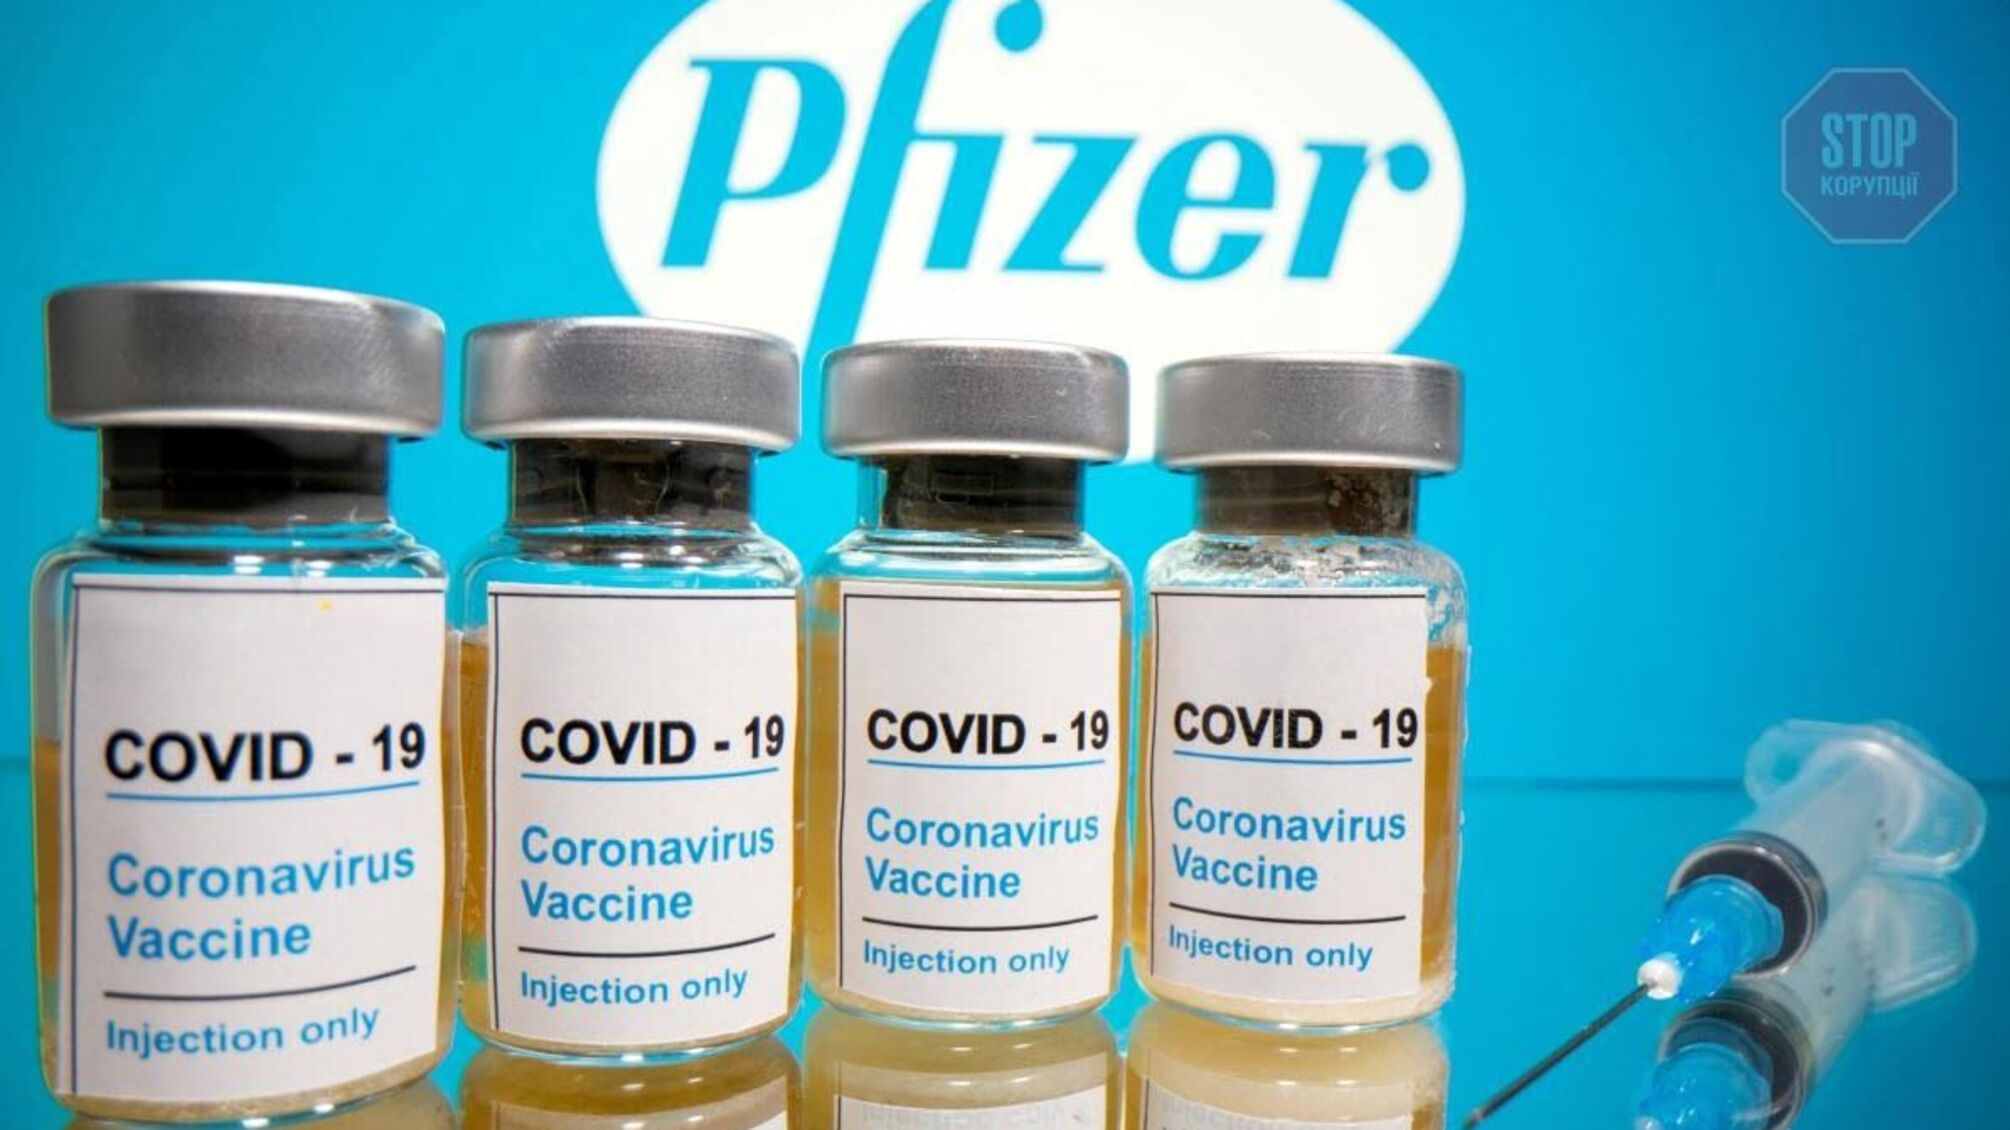 В Україну таємно завезли вакцину Pfizer виключно для “Слуг” та високопоставлених чиновників, — бізнесмен Бродський